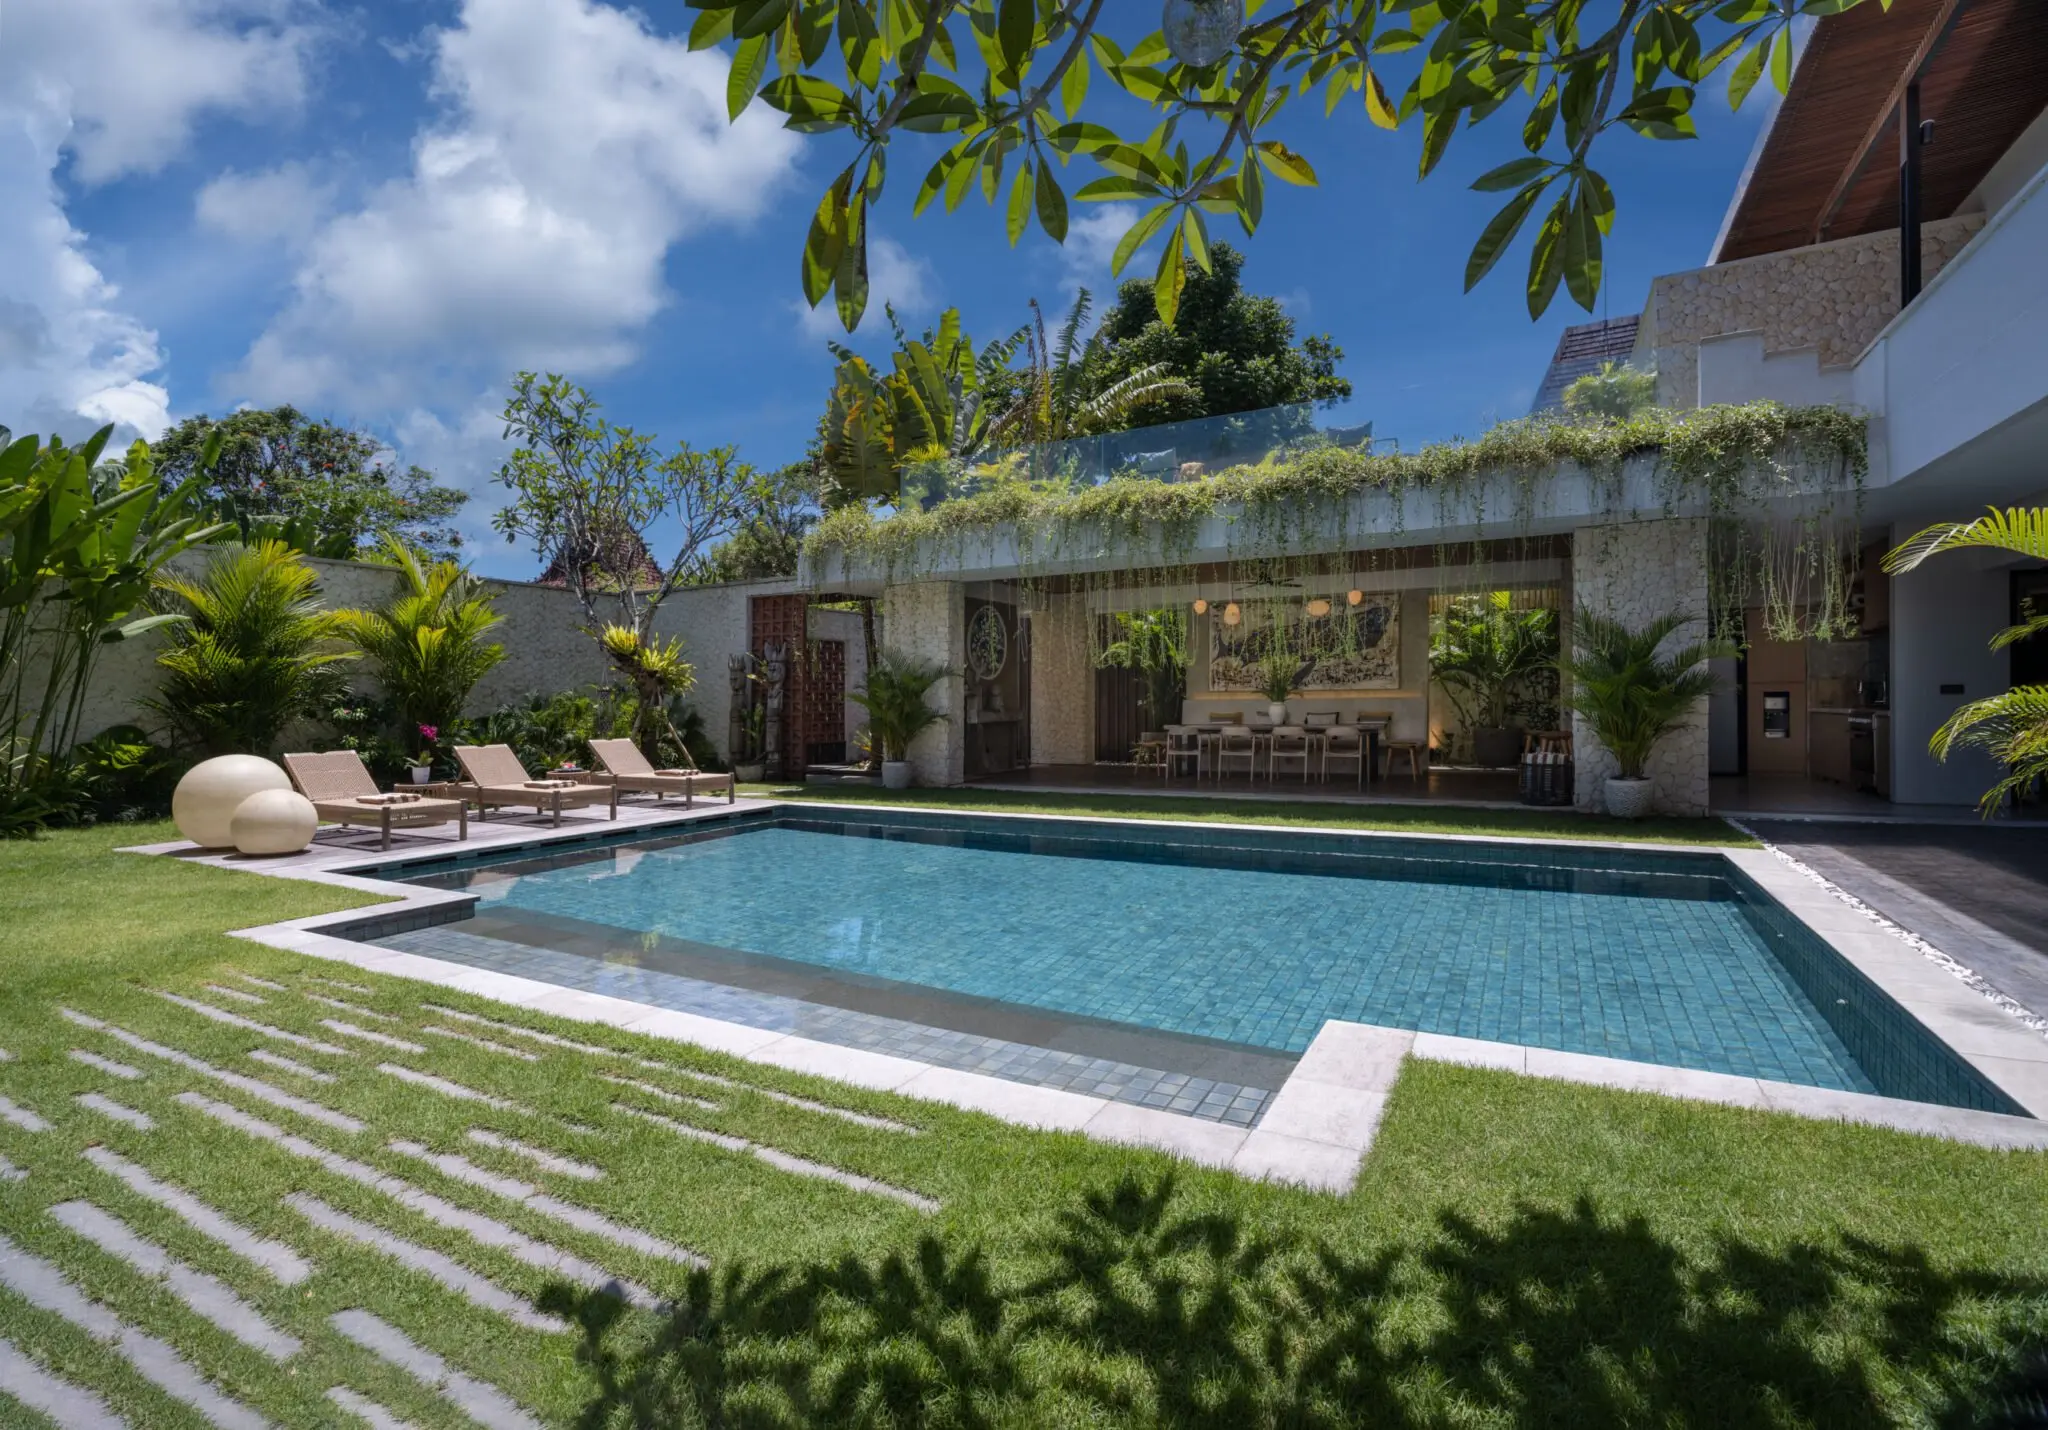 Villa Pantai Indah Canggu holiday villa rental in Bali